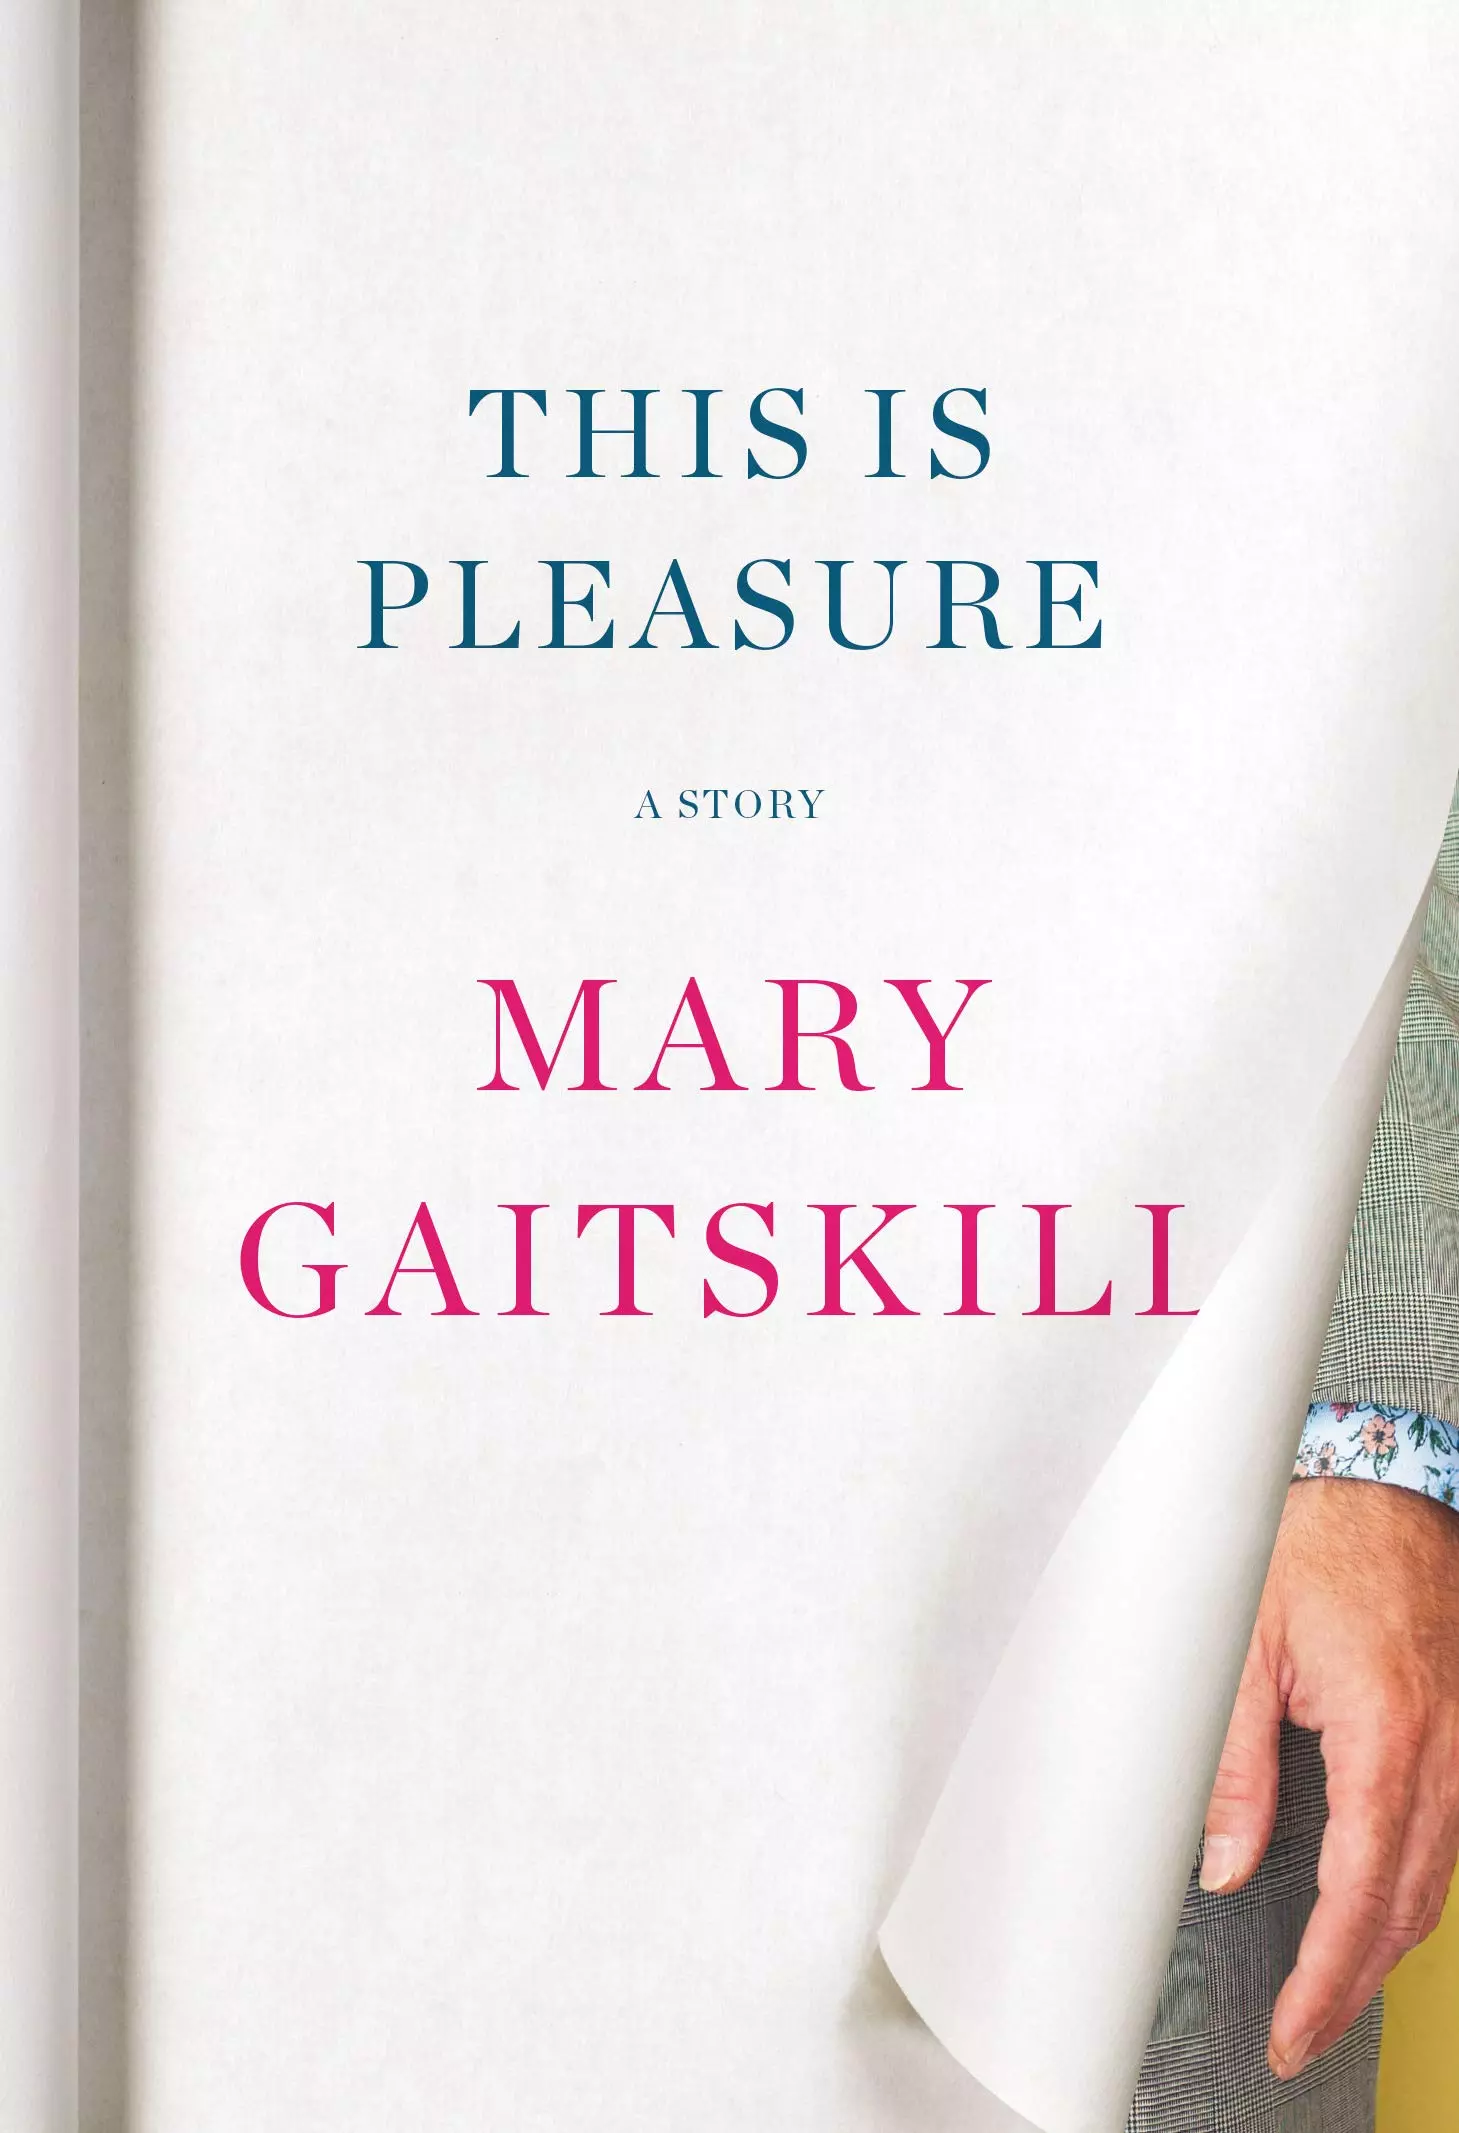 This Is Pleasure by Mary Gaitskili